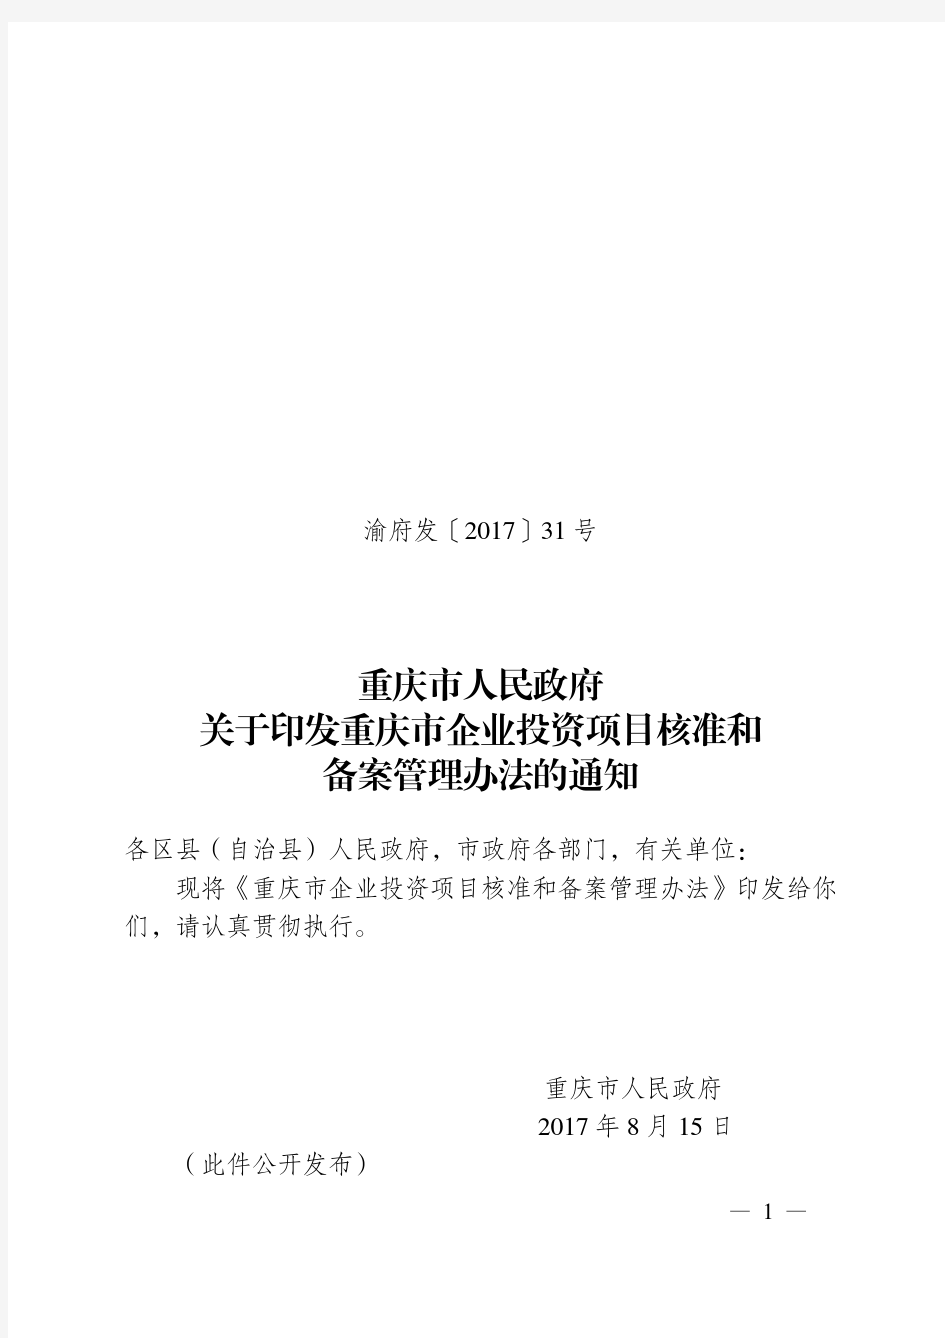 《重庆市企业投资项目核准和备案管理办法(2017年本)》(渝府发〔2017〕31 号)